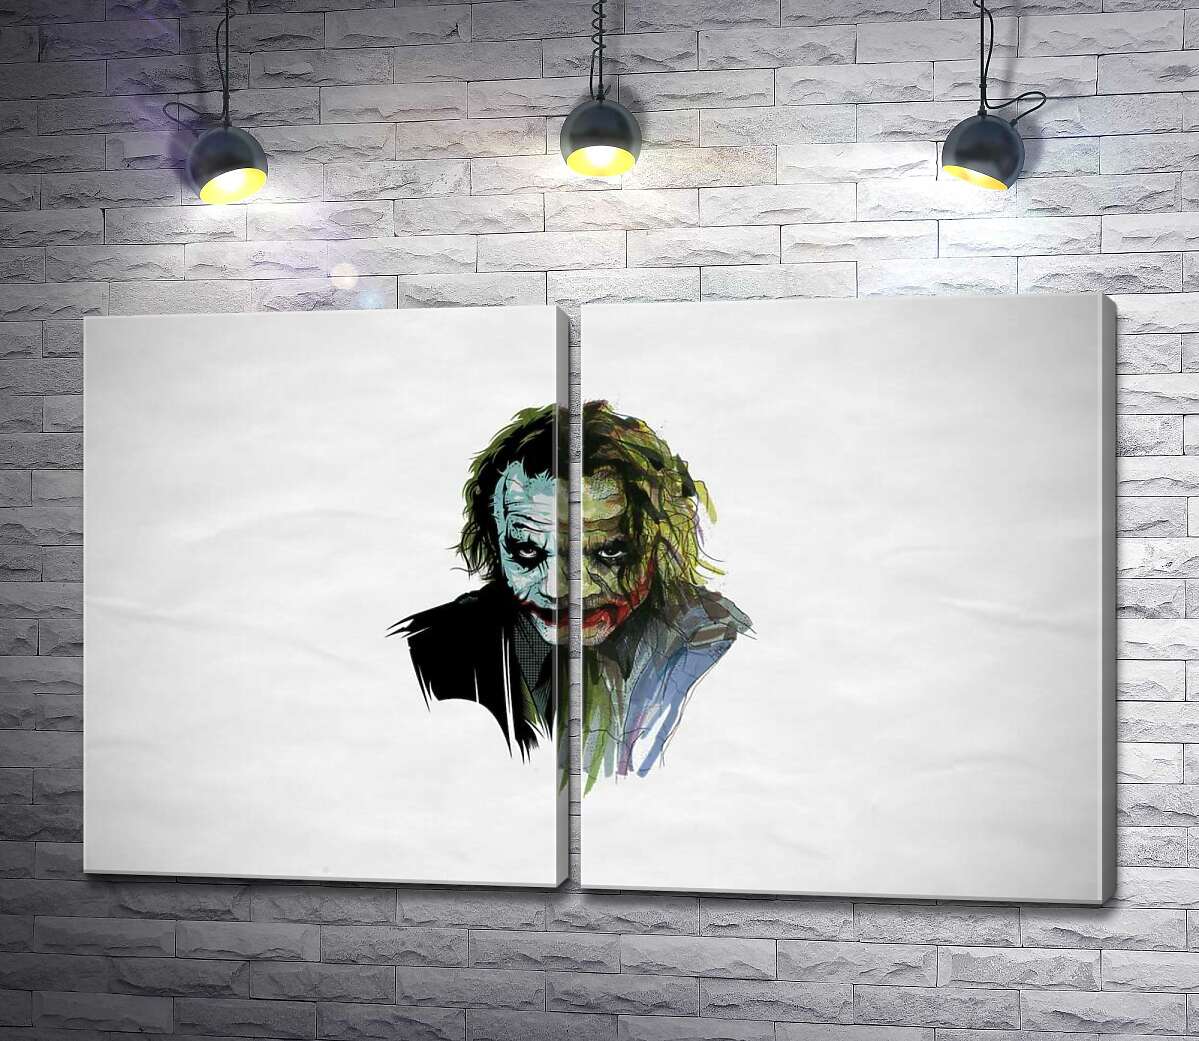 модульная картина Арт-портрет Джокера (Joker) с угрожающим взглядом